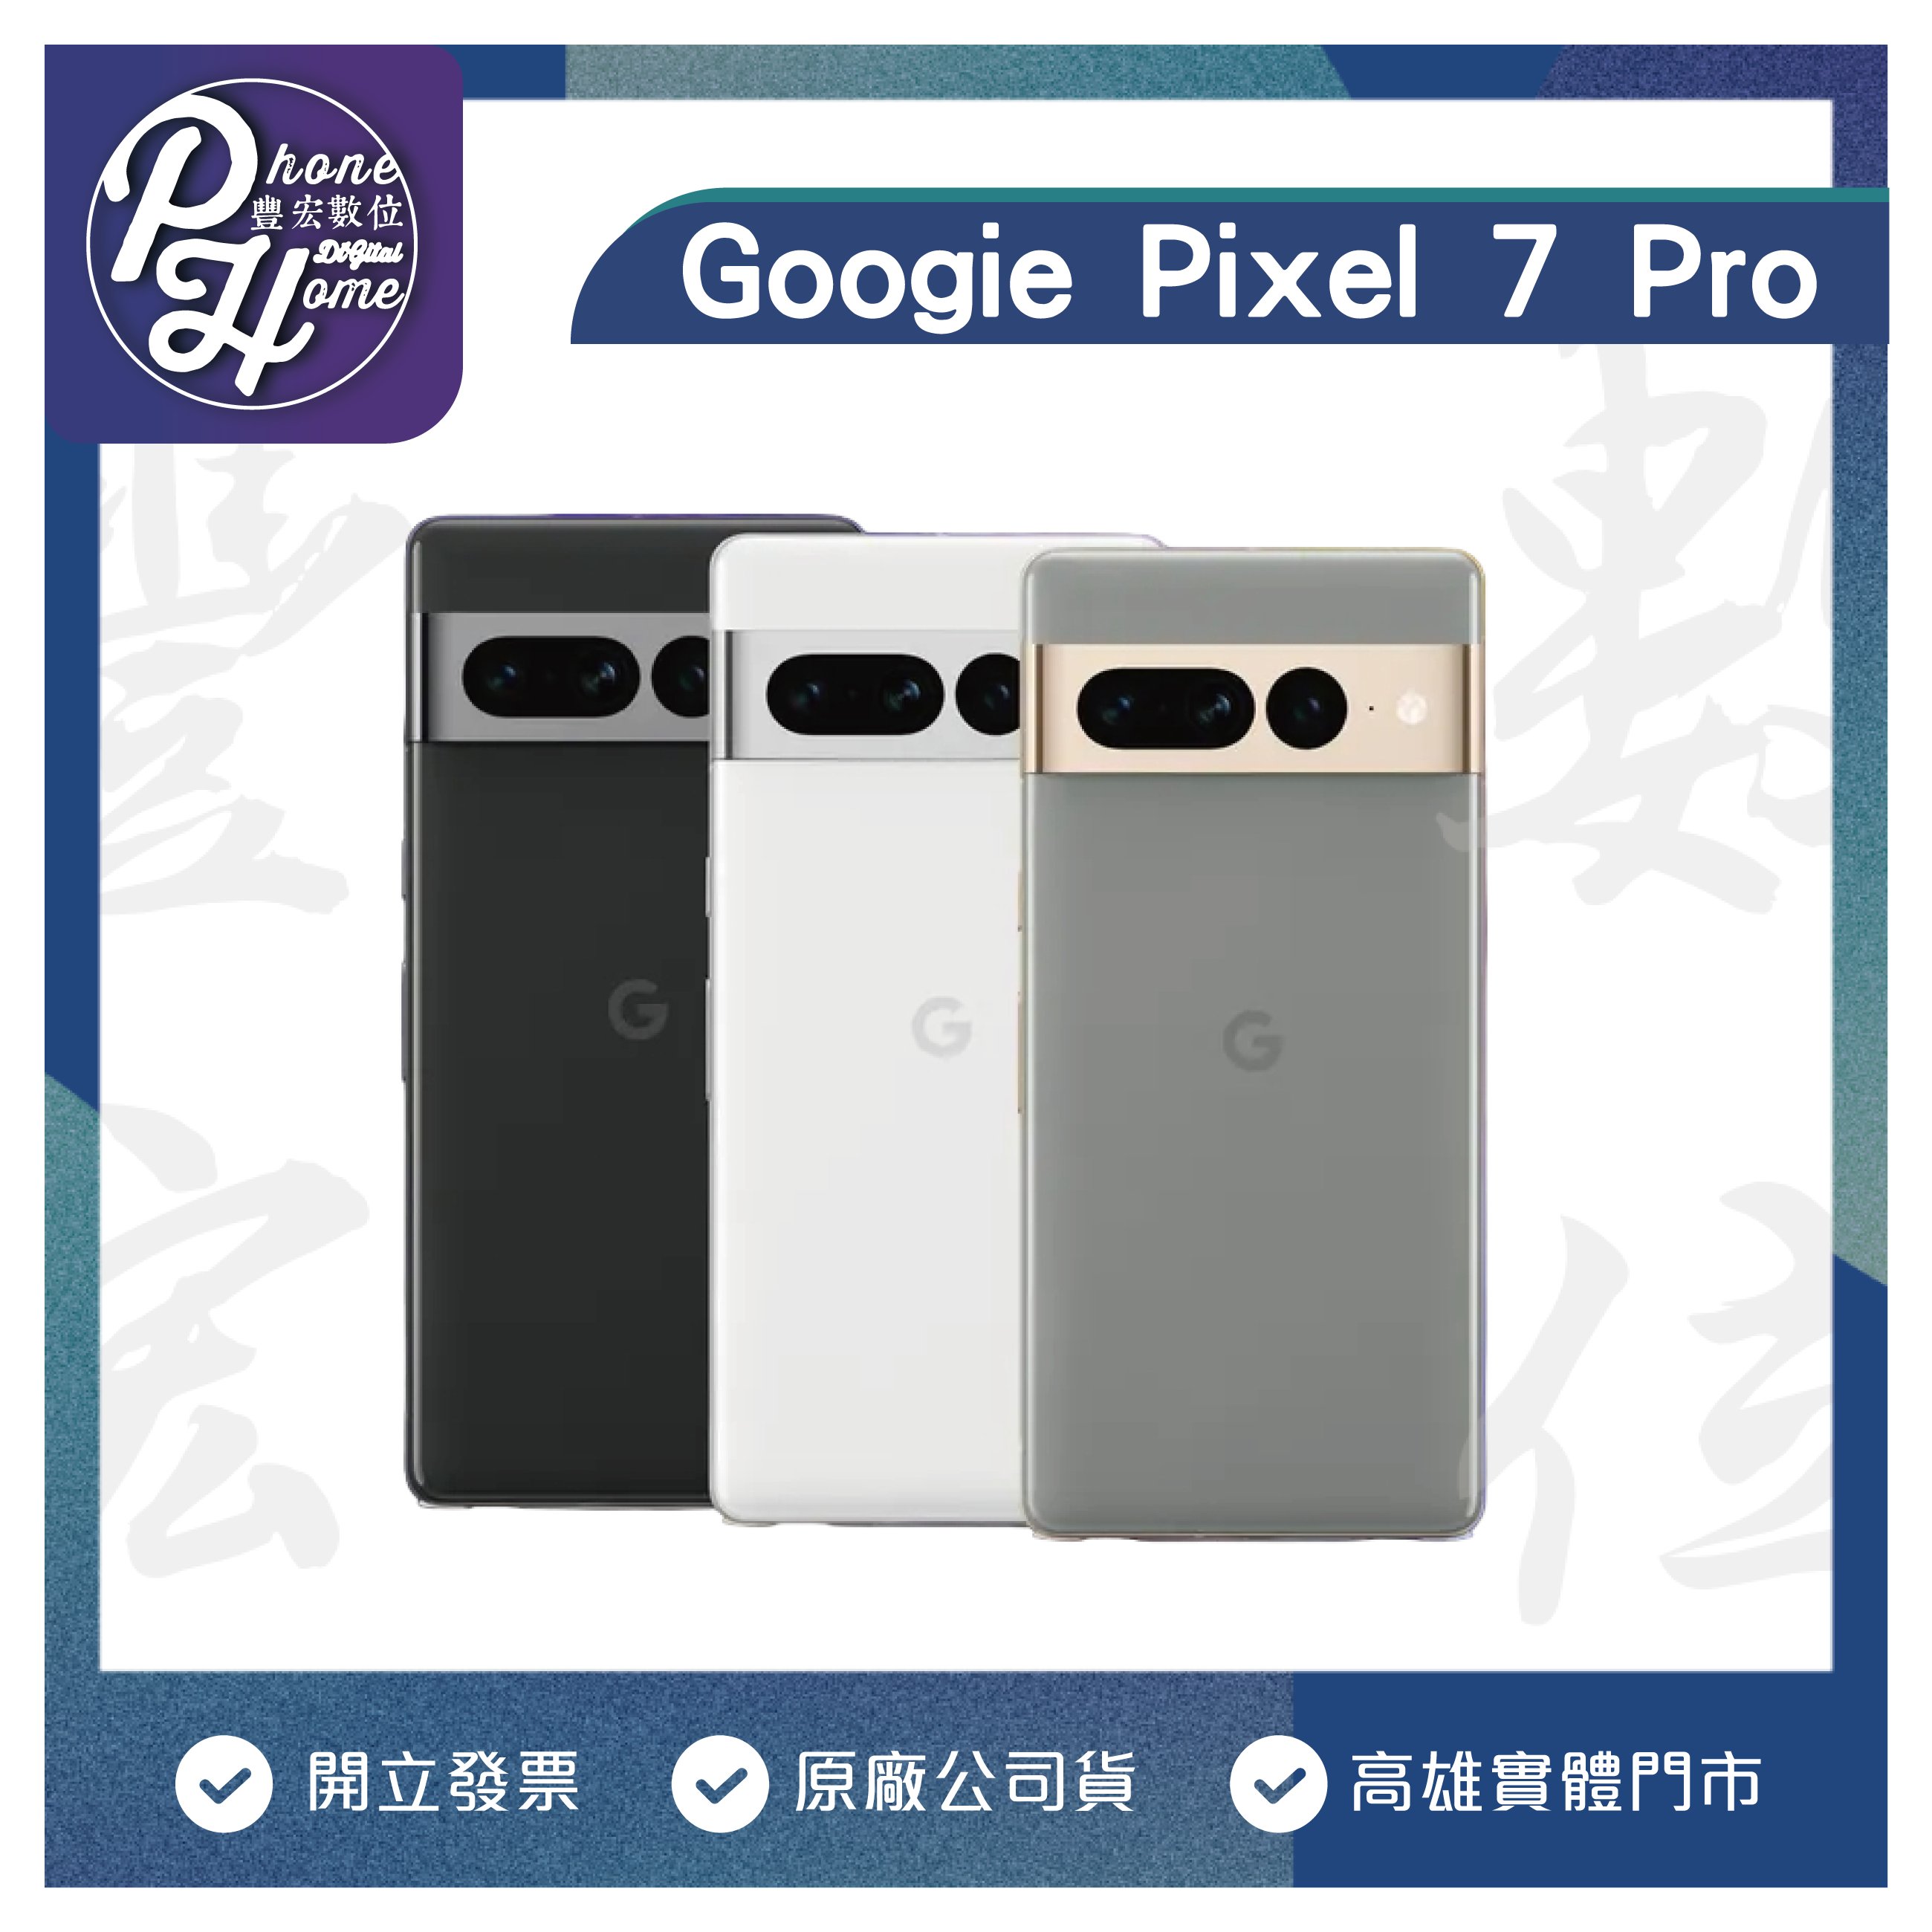 高雄光華Google Pixel 7 Pro 【12+256G】 6.3吋現金價原廠公司貨高雄